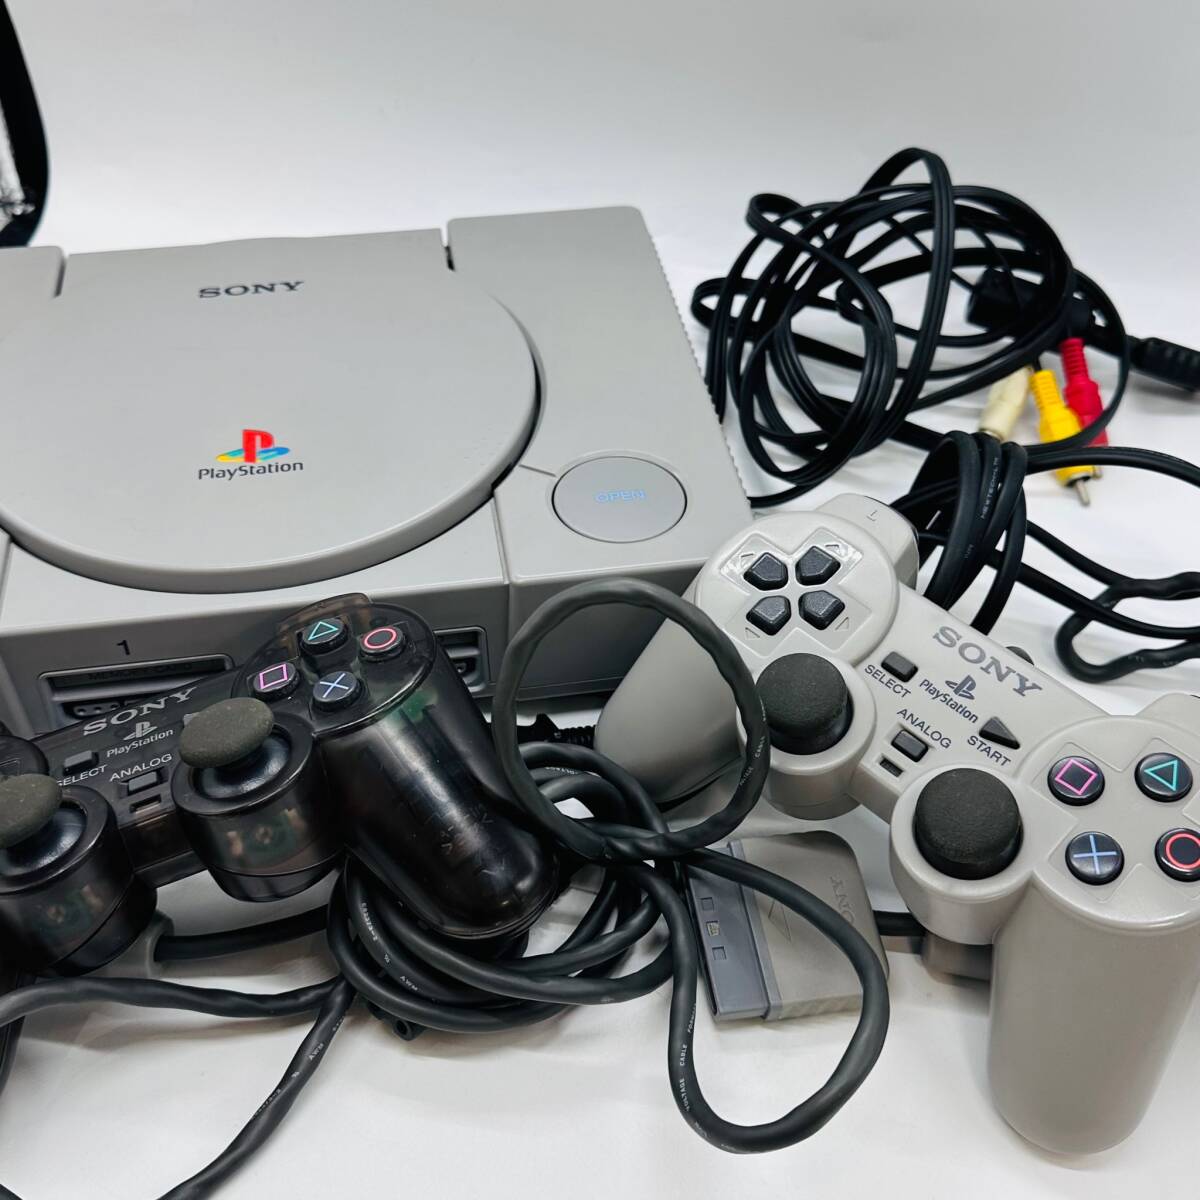  первое поколение PlayStation PlayStation PS1 PlayStation 1 SCPH-7000 корпус SONY Sony 1 иен retro игра текущее состояние товар электризация проверка 0 шумит есть основной Го 